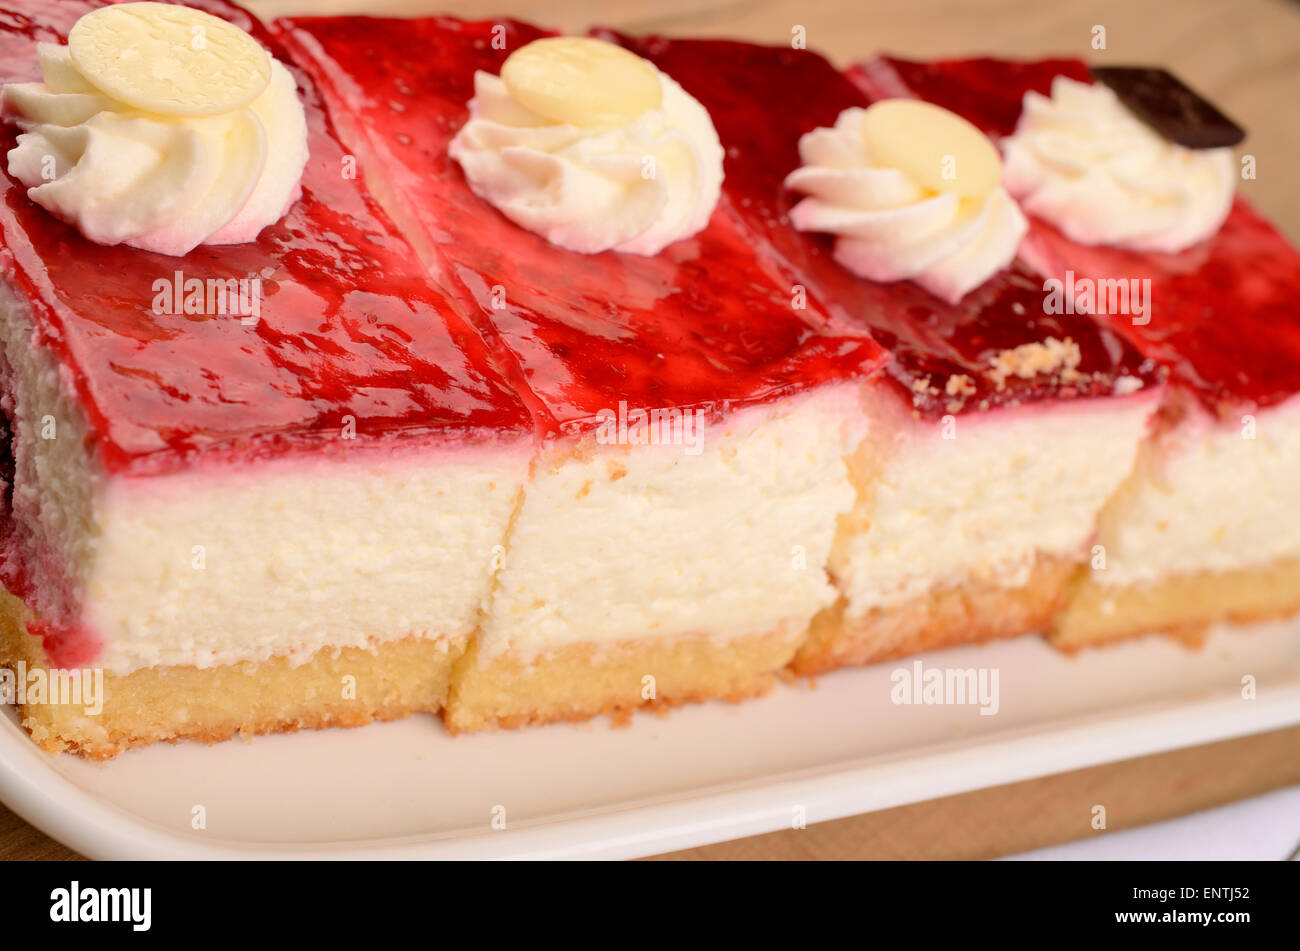 Cerca de una dulce tarta de frambuesa sobre una placa Foto de stock